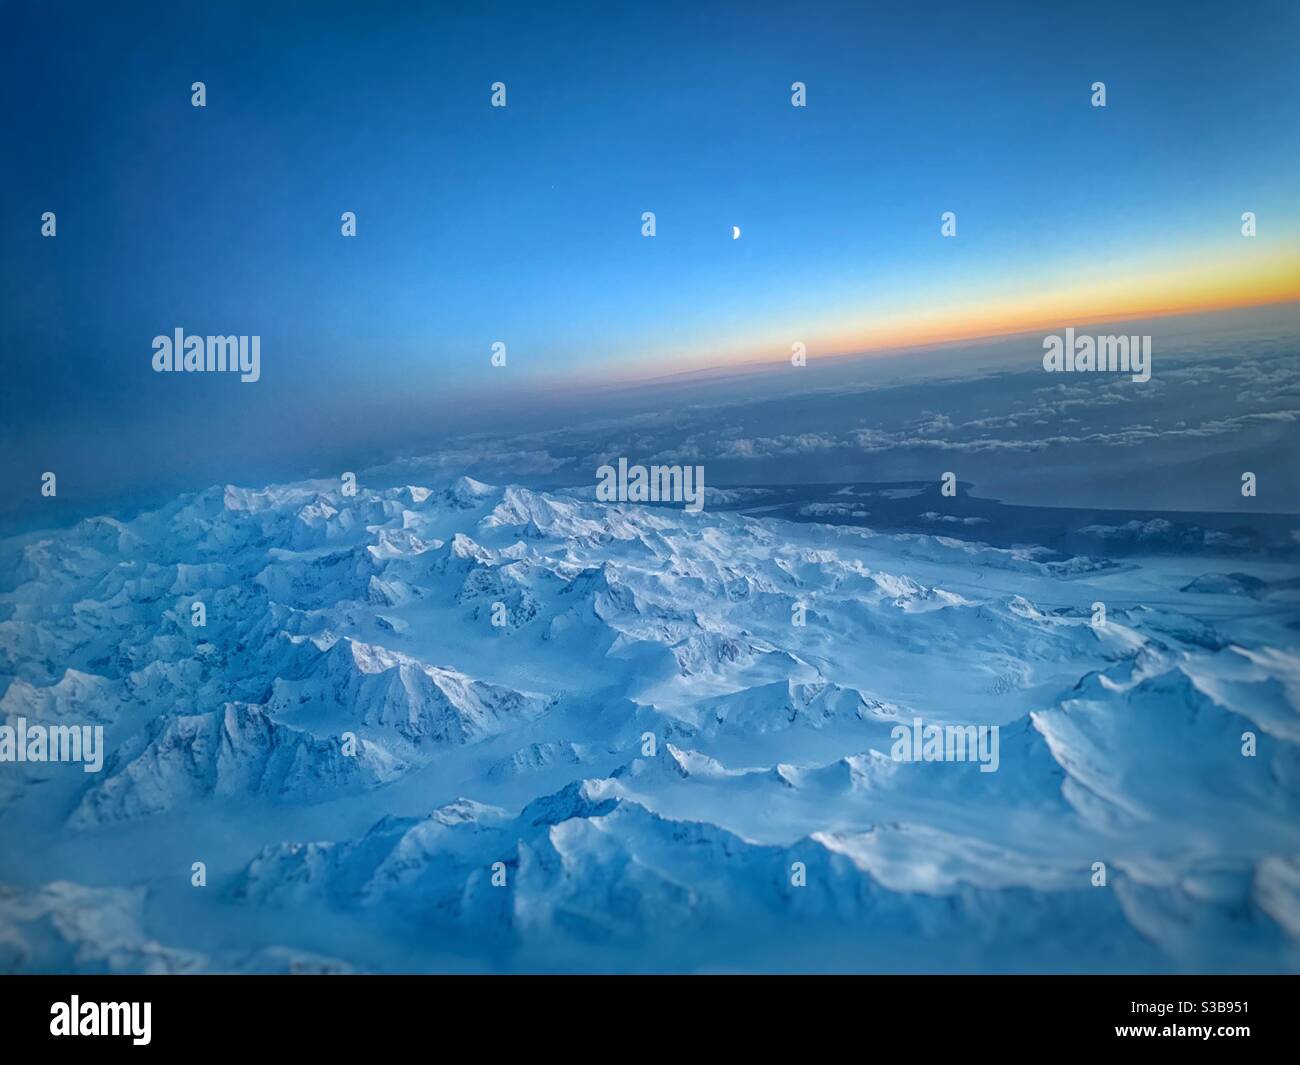 Immagine aerea delle montagne innevate al tramonto Foto Stock